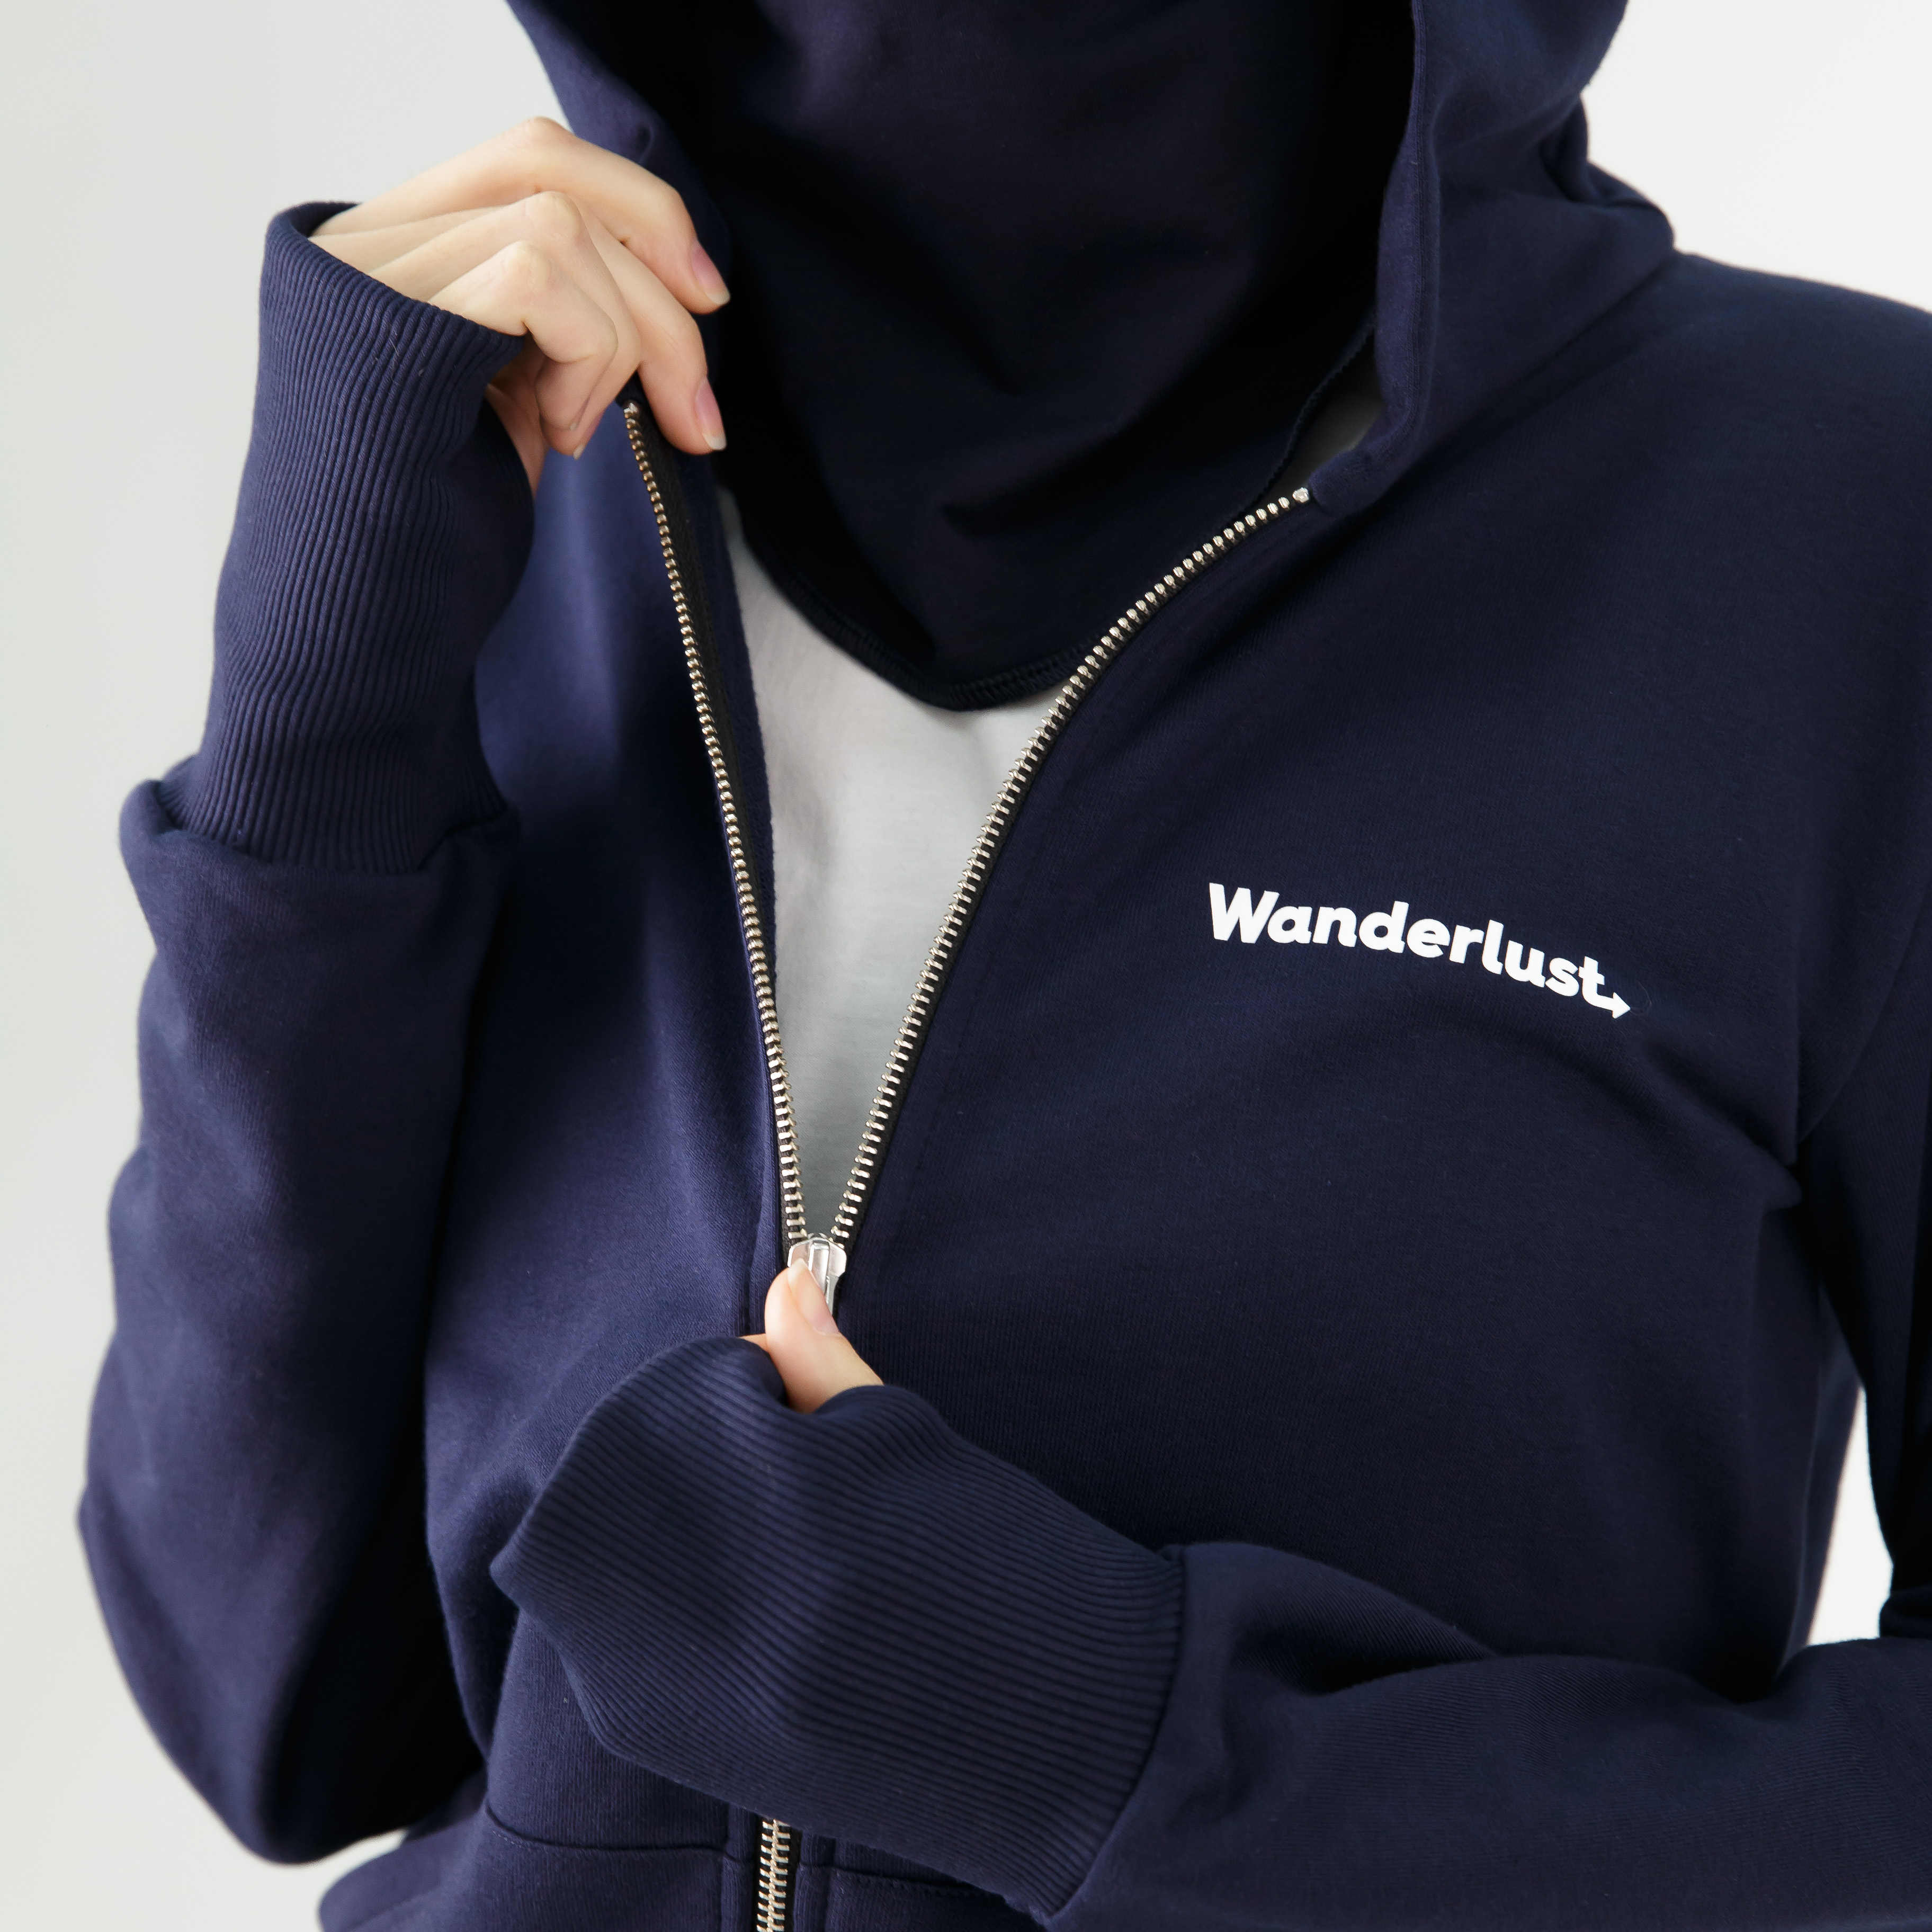 Wanderlust hoodie